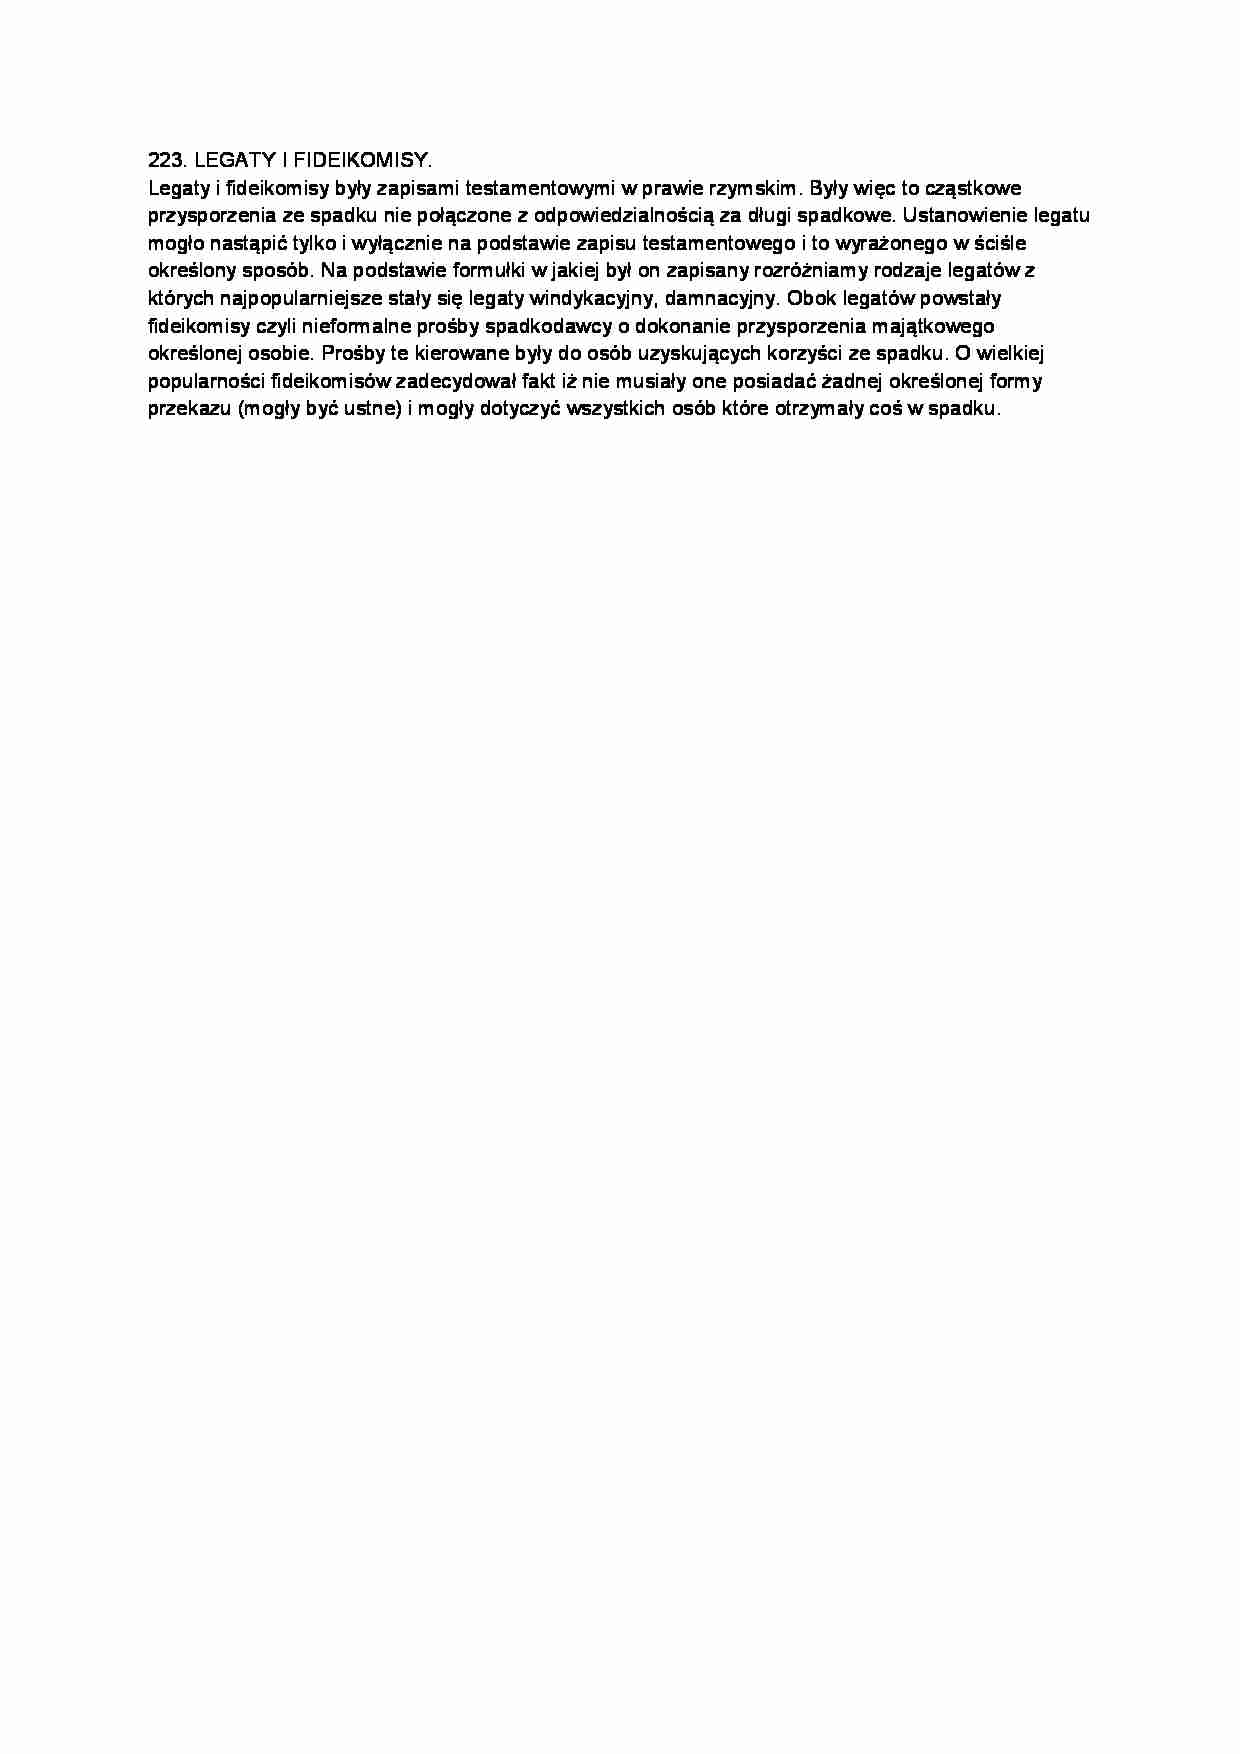  Legaty i fideikomisy - omówienie - strona 1